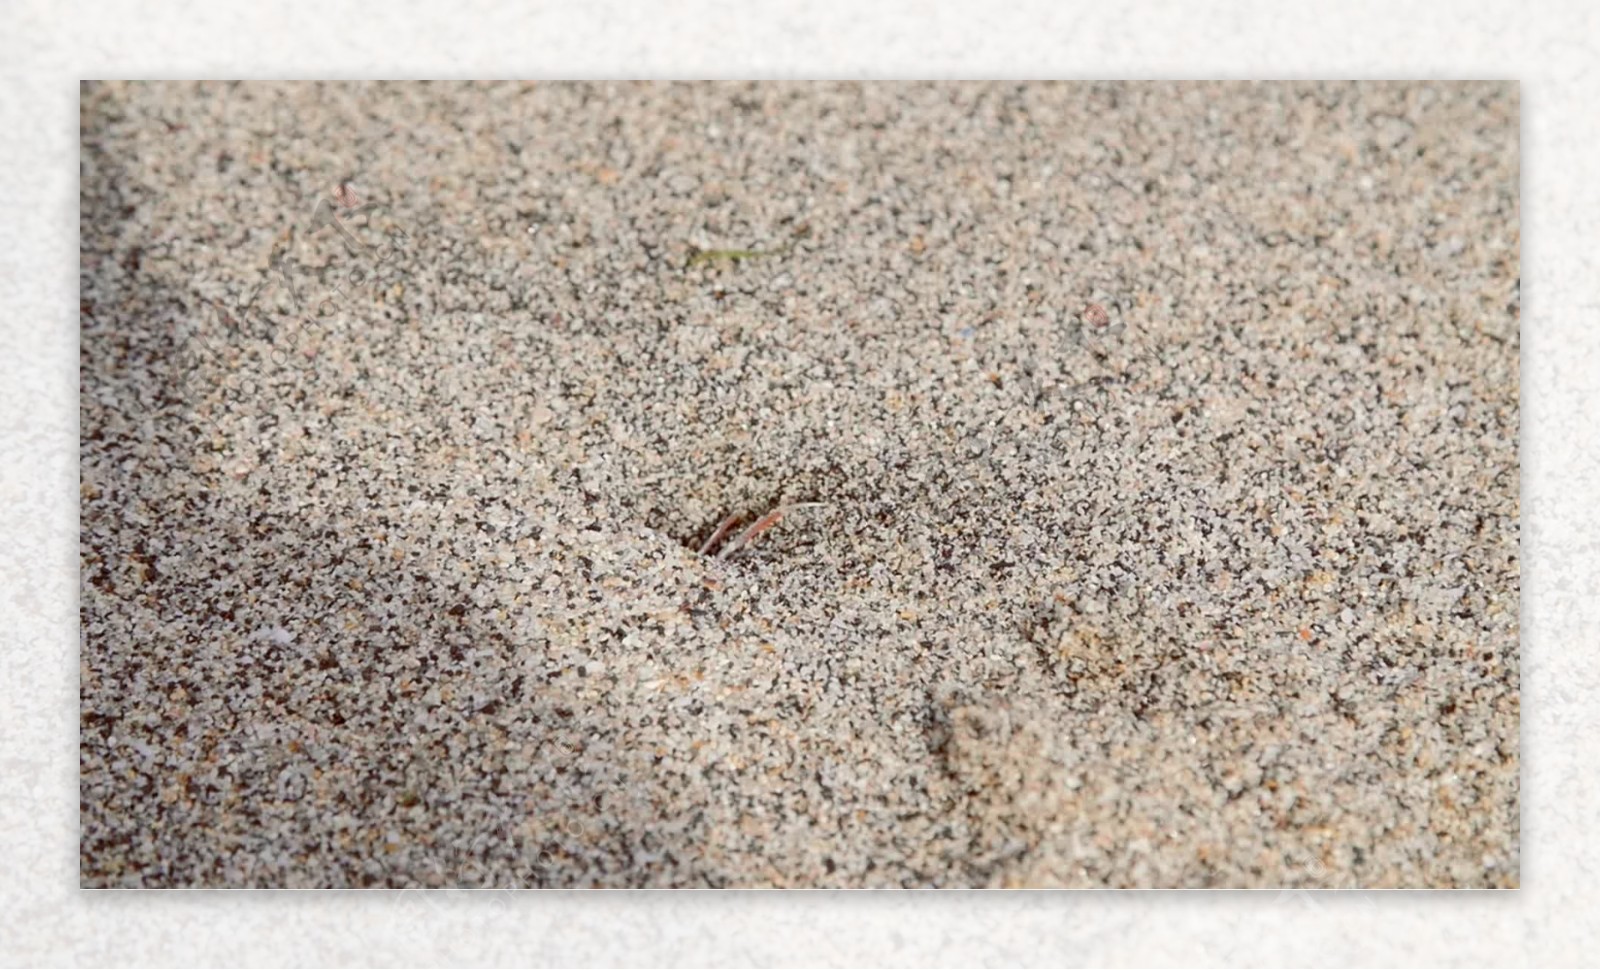 小螃蟹跑进沙子里的洞